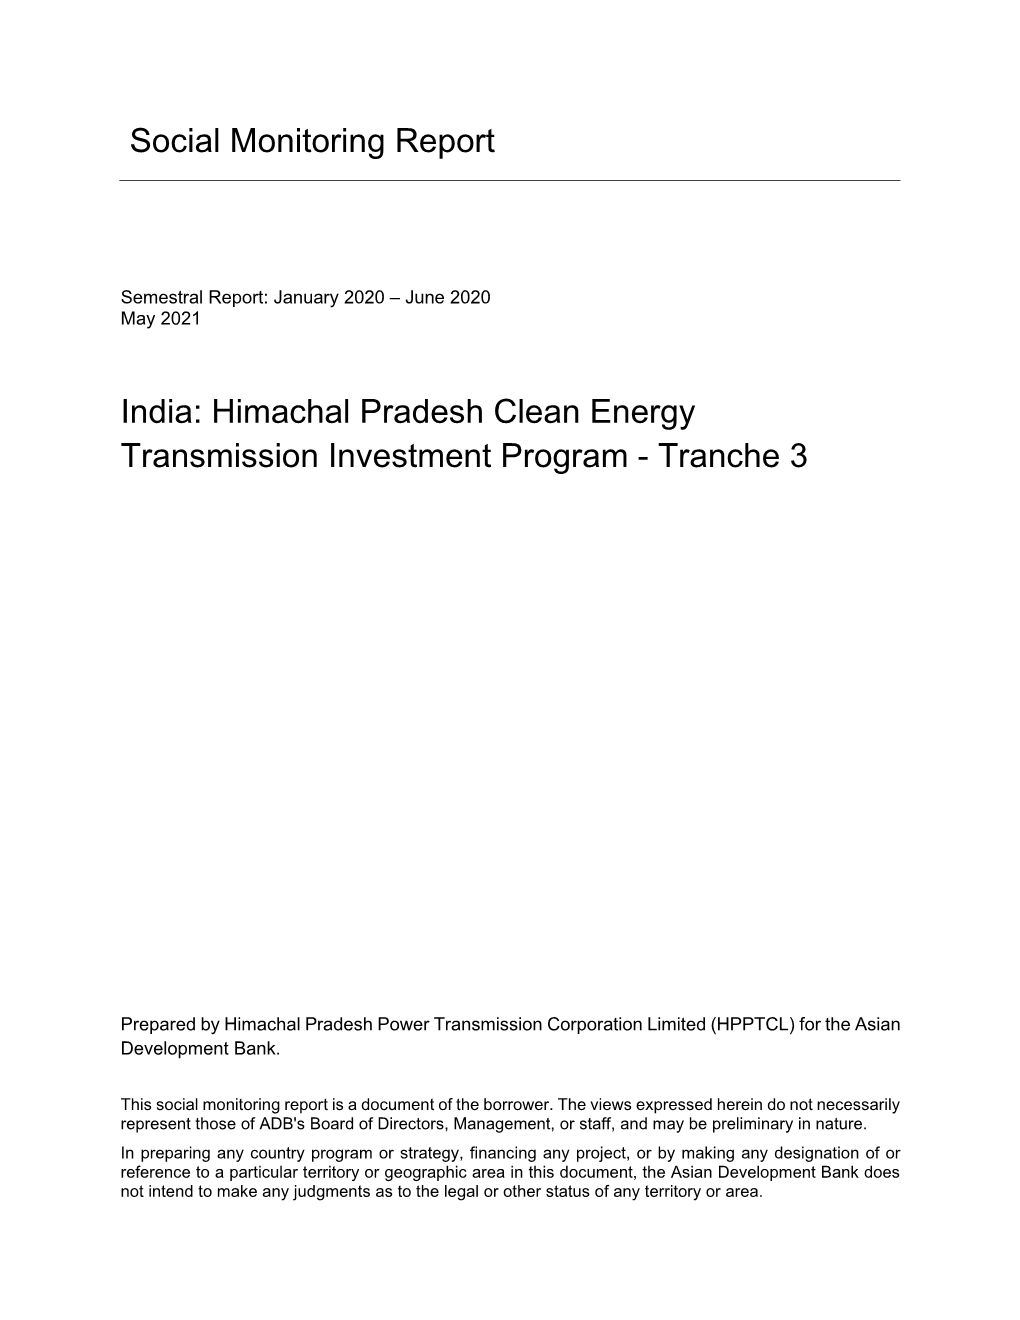 Social Monitoring Report India: Himachal Pradesh Clean Energy